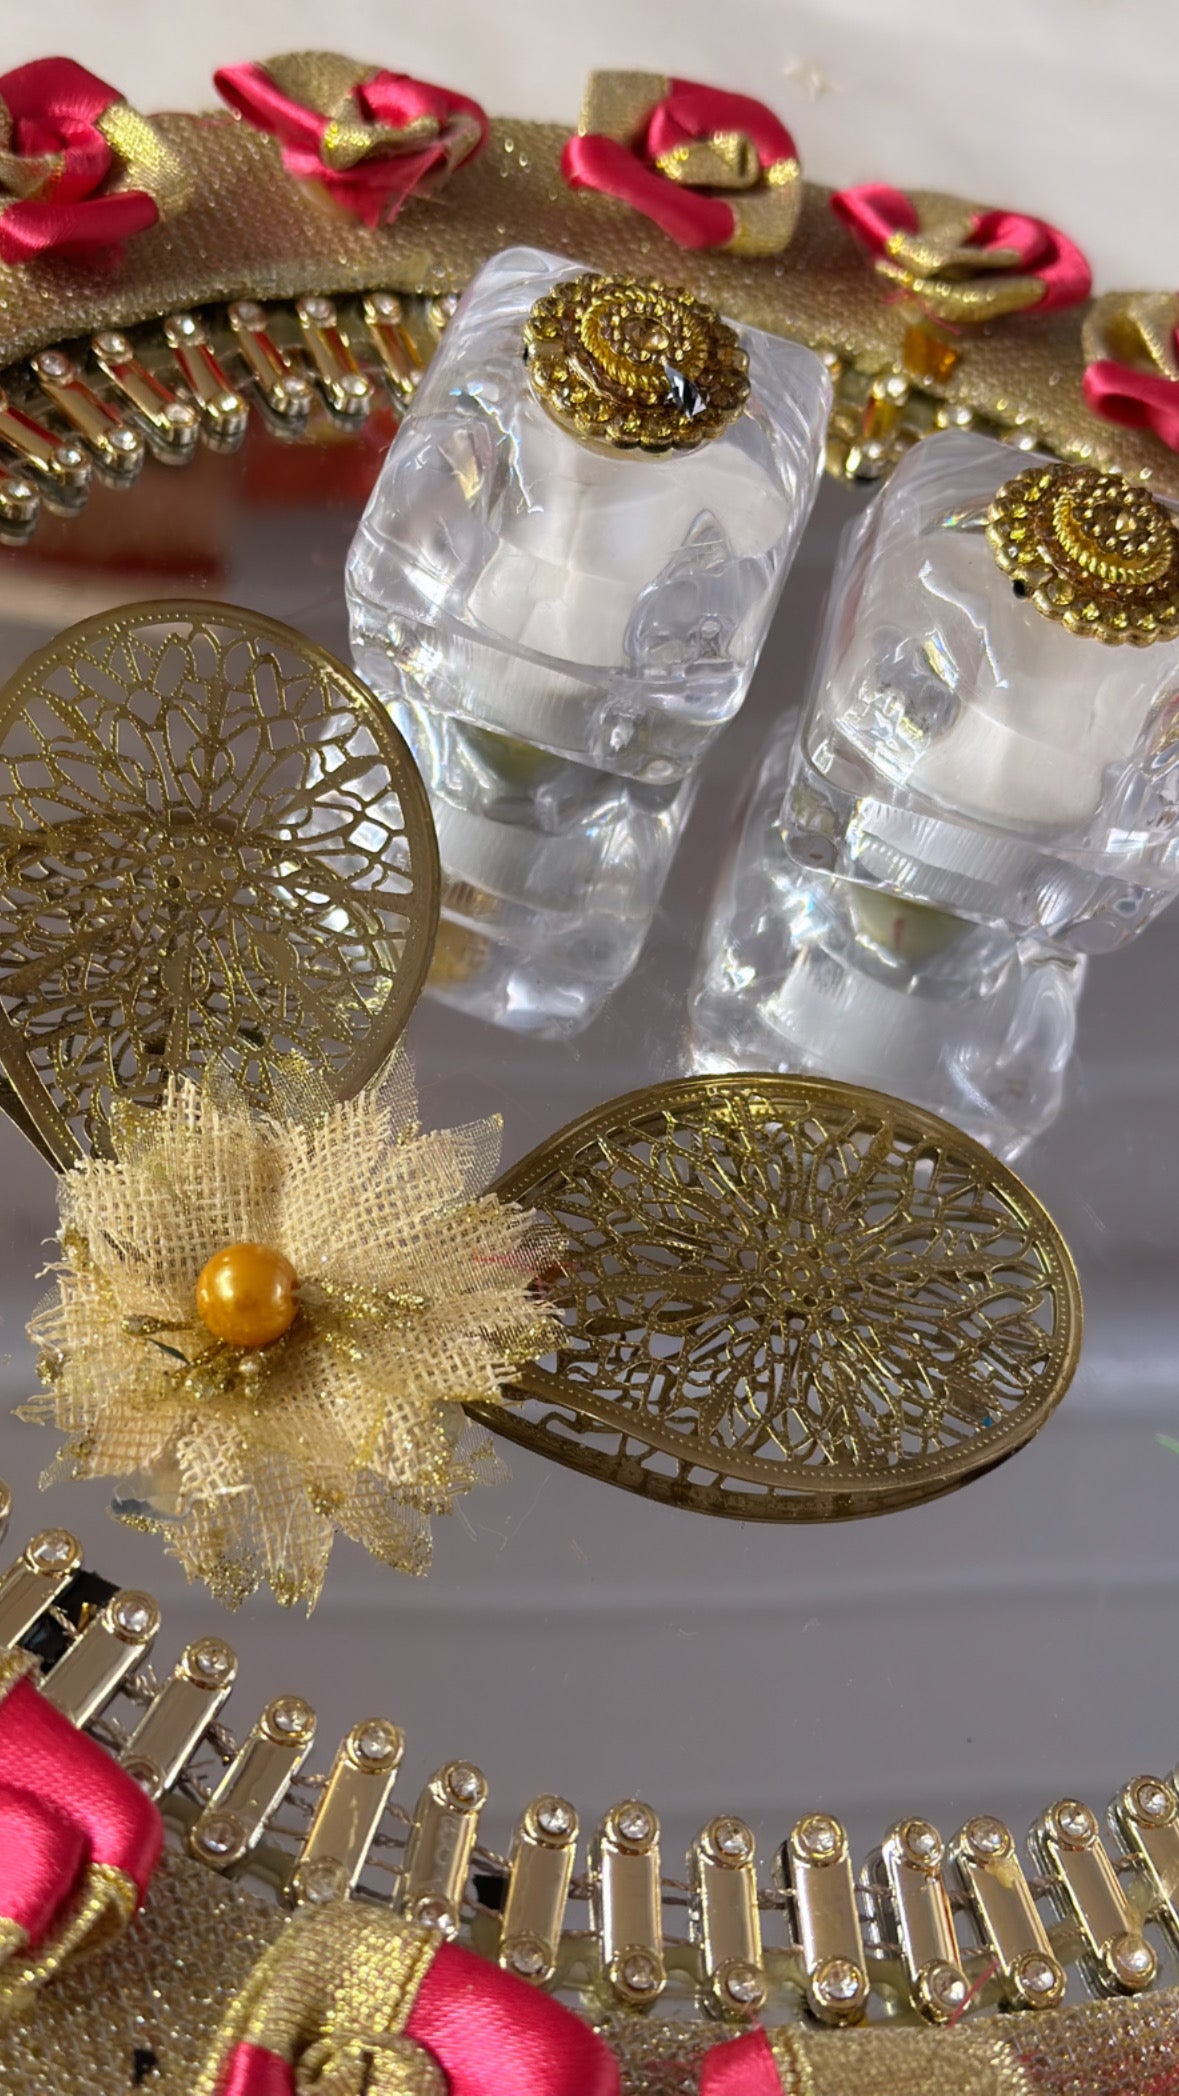 Engagement Ring Platter|Engagmrnt Ring Platter Decoration Ideas |Ring  Platter At Home | @SMBHUNAR - YouTube